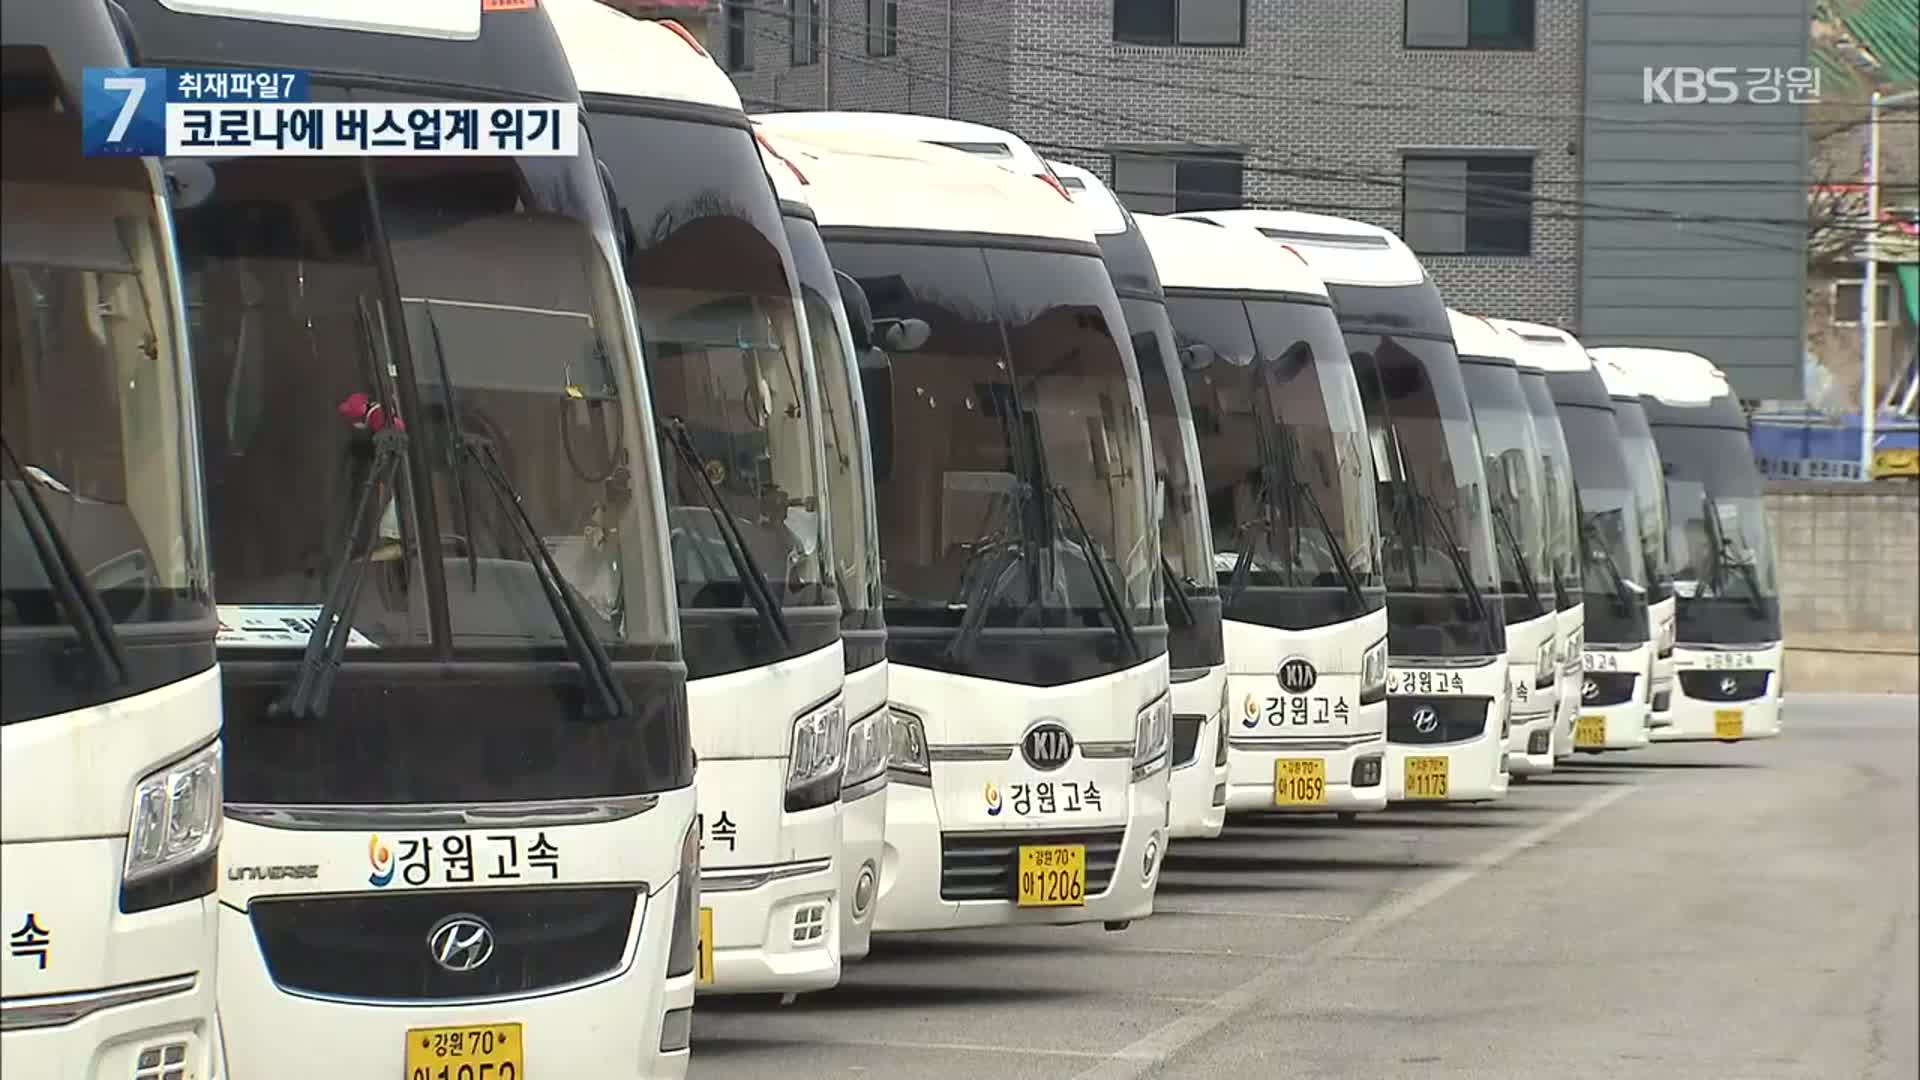 [취재파일7]① 코로나19에 버스업계 위기…지원 받아도 ‘휘청’